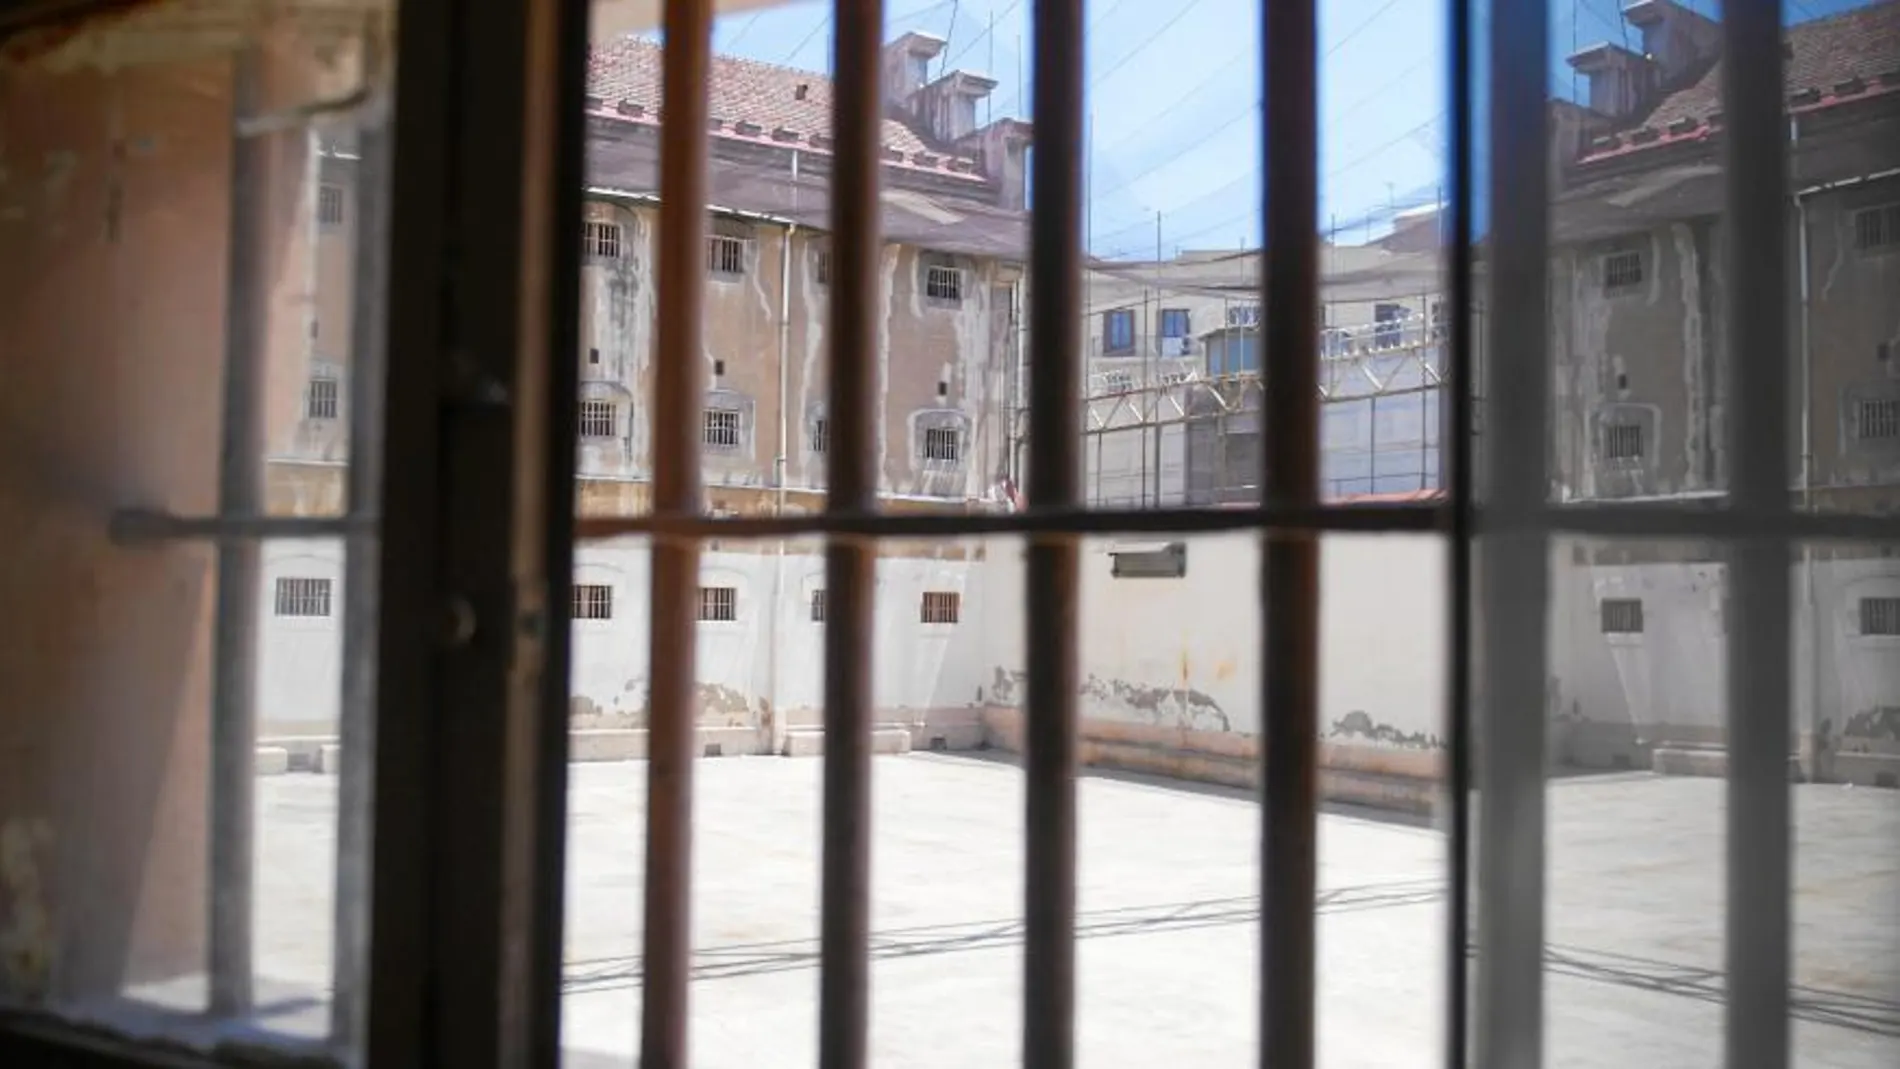 Además de visitar las instalaciones, los interesados podrán acercarse a una exposición sobre los últimos tiempos de la prisión en los muros externos